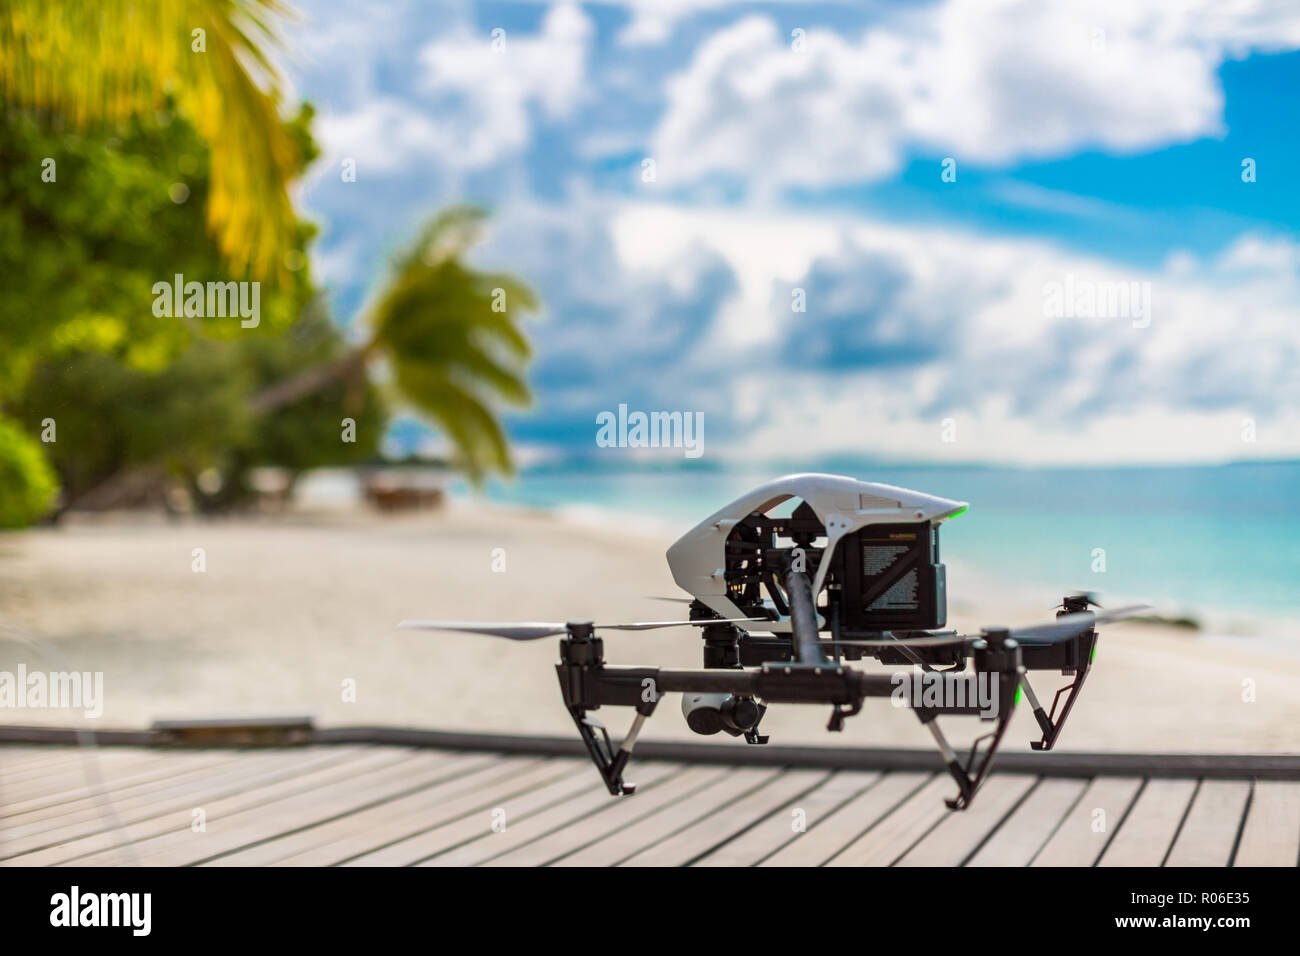 Professional drone prendendo immagini di sfondo sulla spiaggia, palme e il molo in legno. Volo sopra spiaggia natura e prendendo immagini uniche Foto Stock